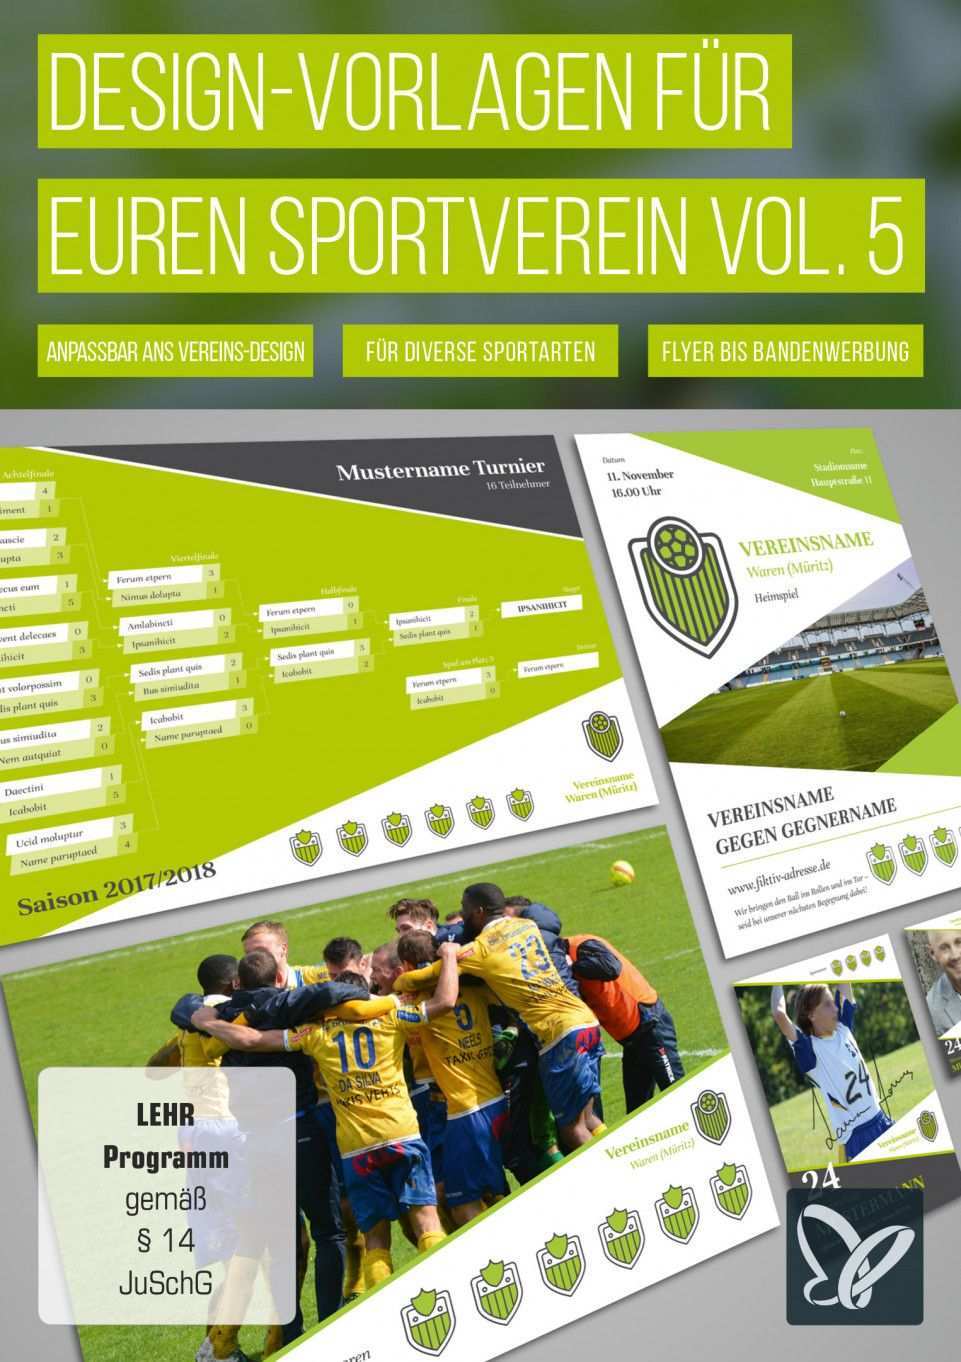 Design Vorlagen Fur Sportvereine Spendenscheck Werbebanner Co Sportverein Verein Vorlagen